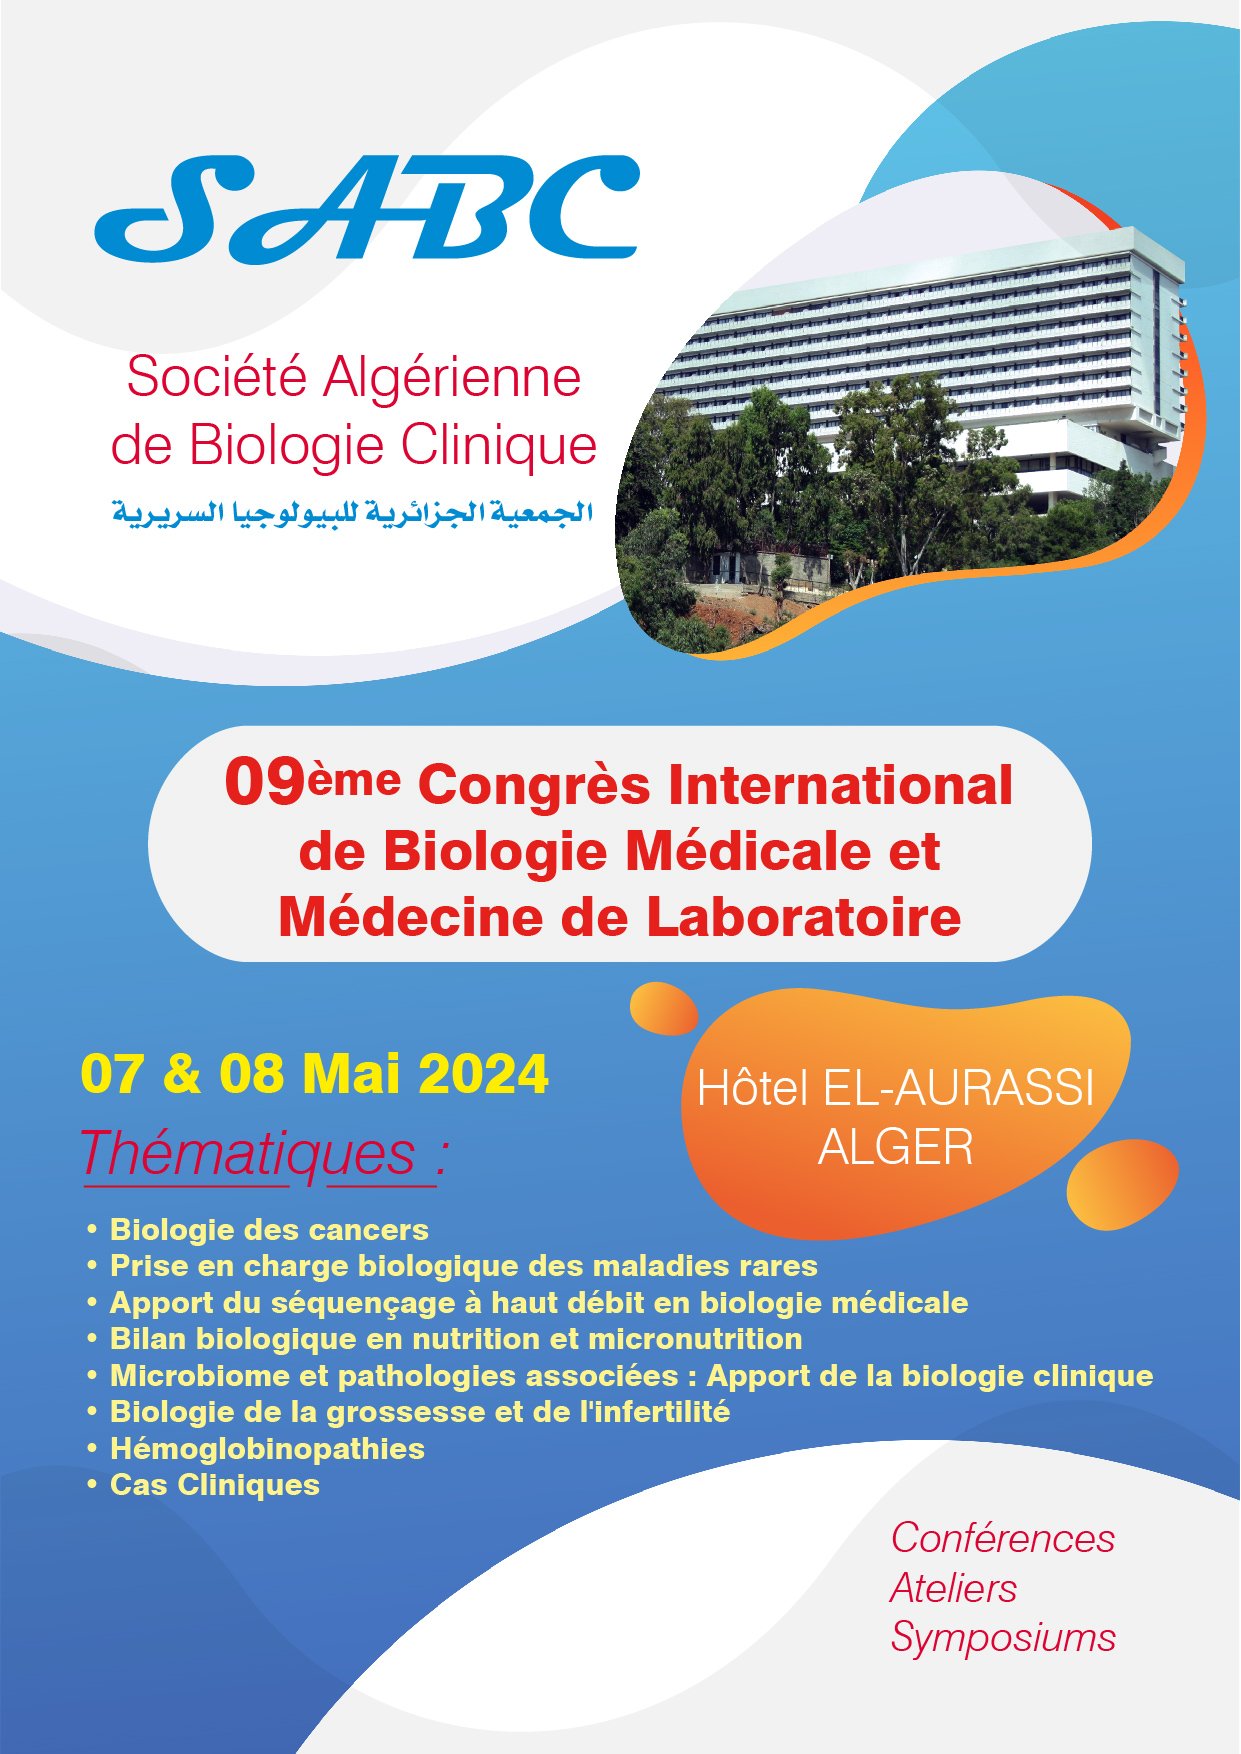 9ème Congrès International de Biologie Médicale et Médecine de Laboratoire